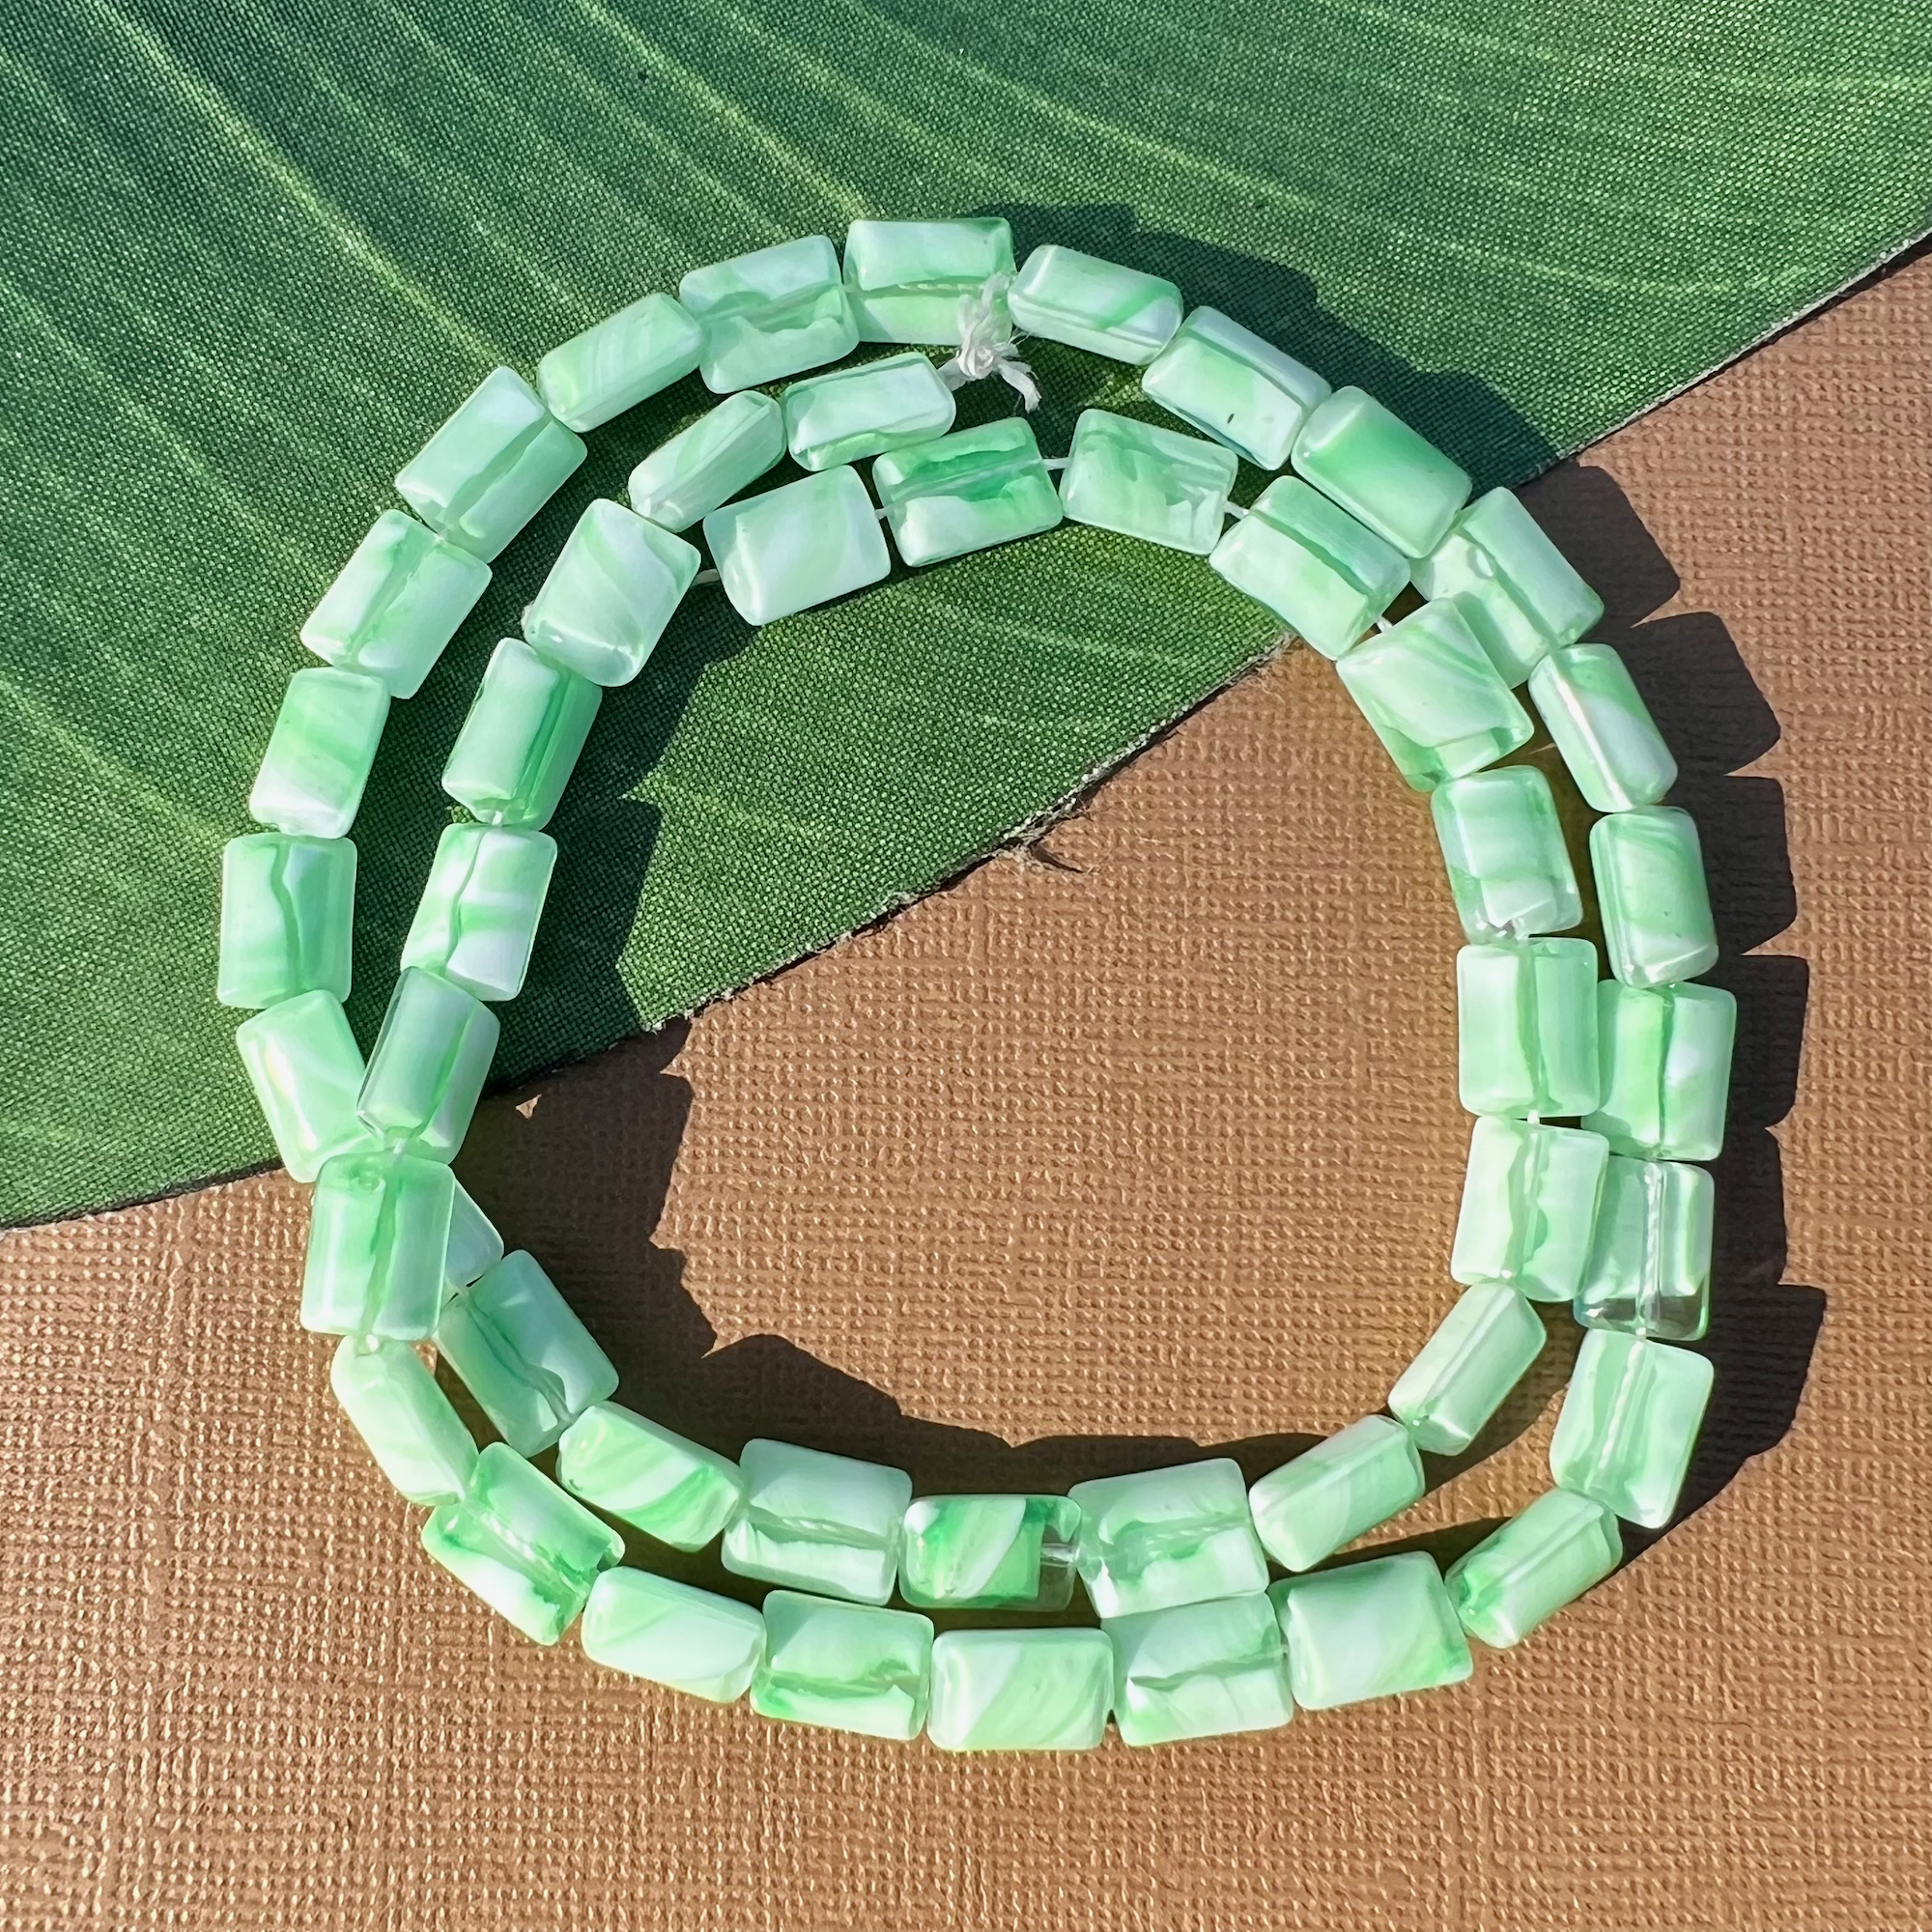 Green Czech Chiclet Beads - 50 Pieces